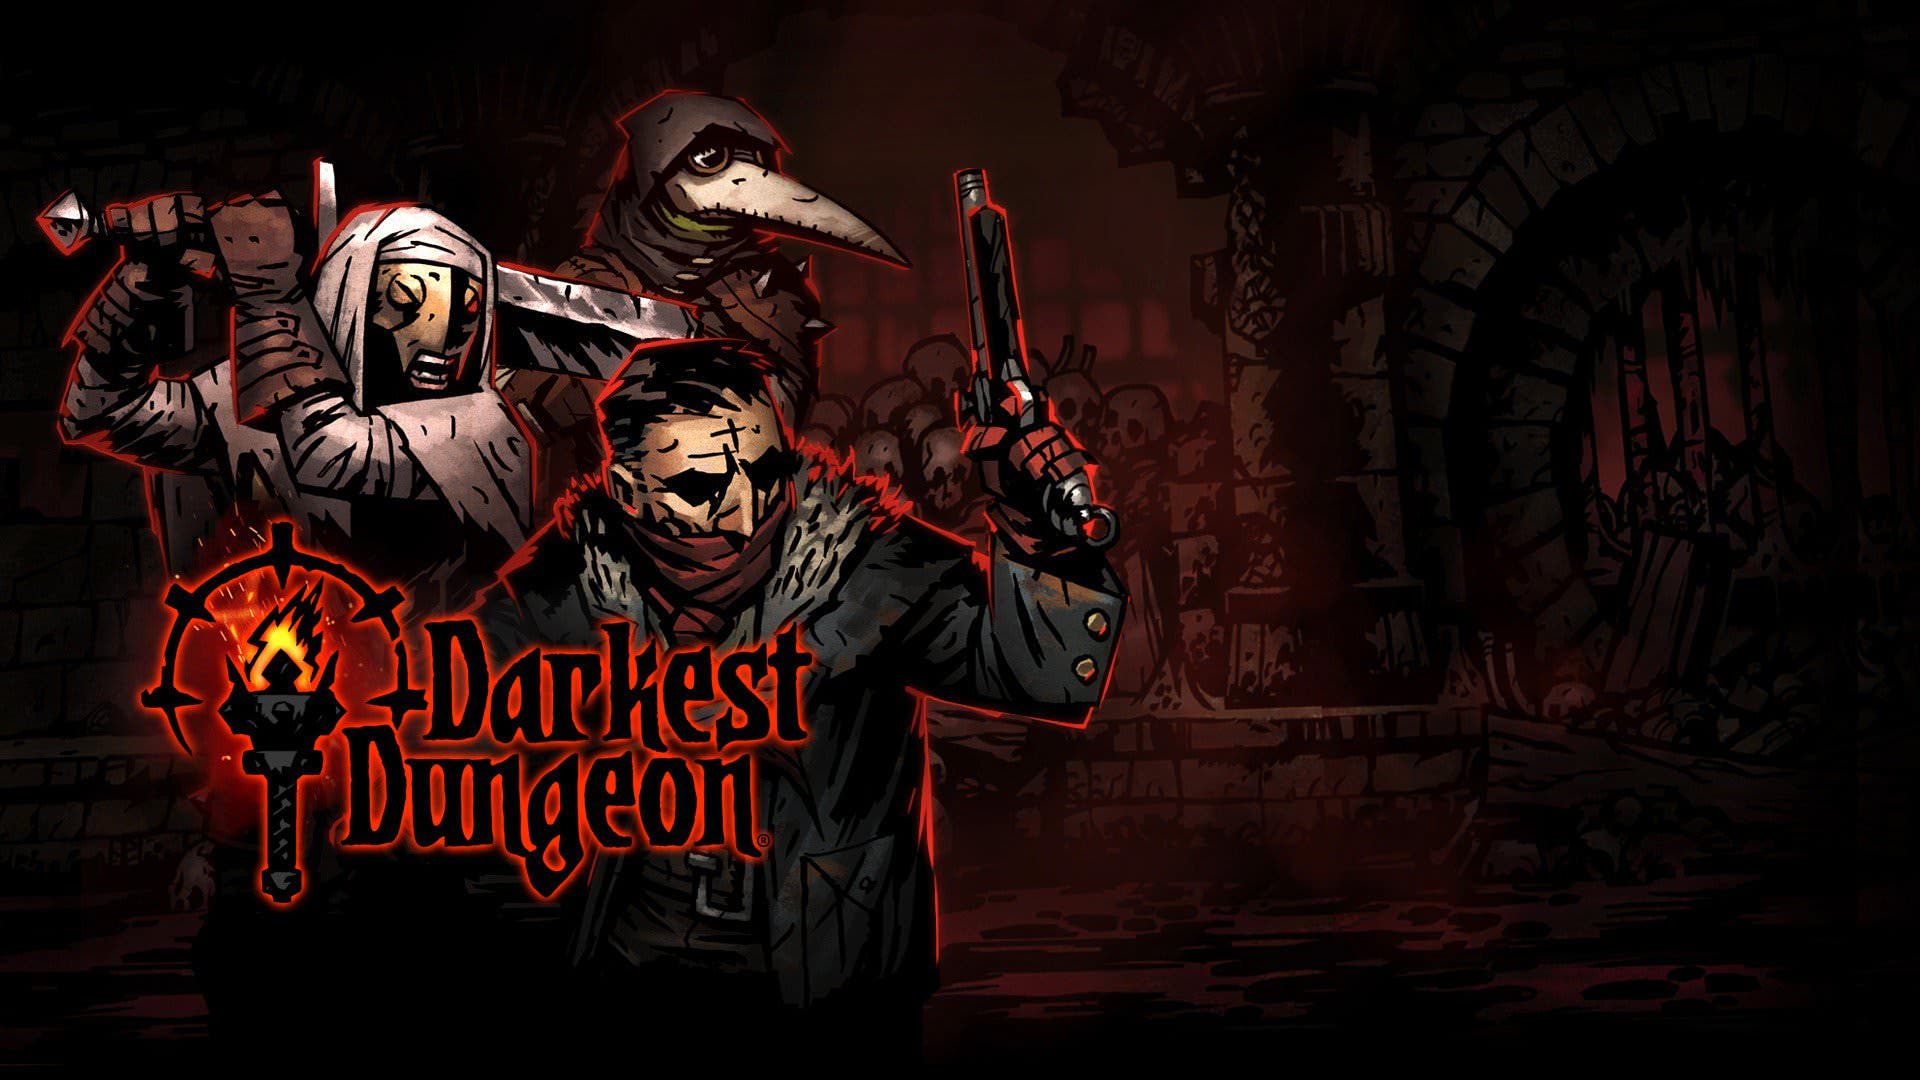 Parece que Darkest Dungeon contará con edición en formato físico para Switch